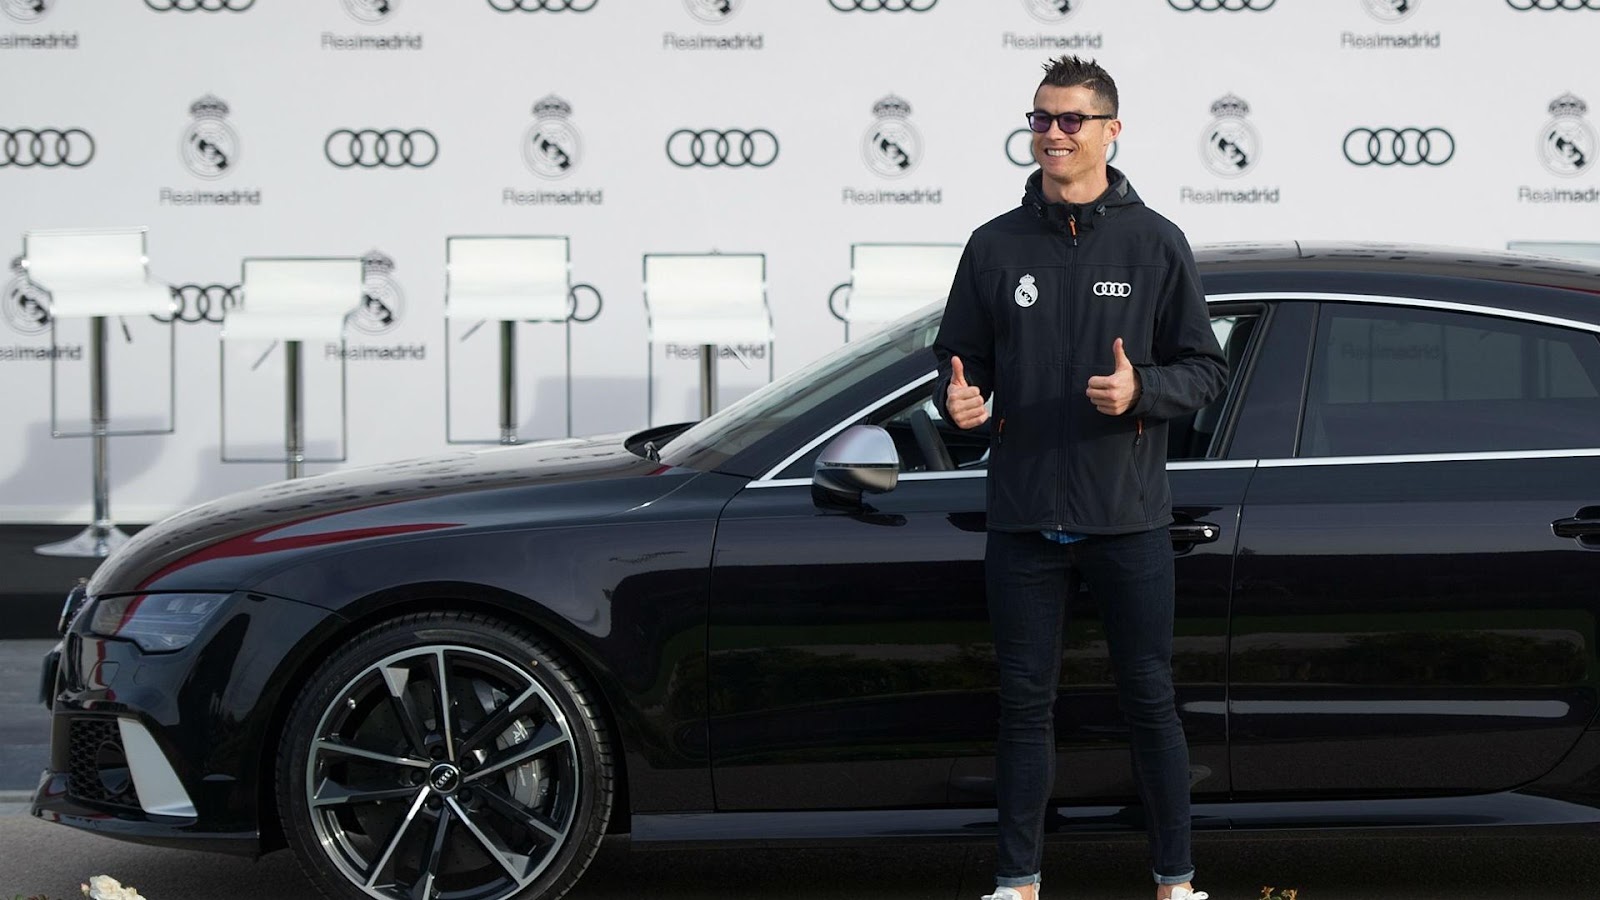 Cristiano Ronaldo's Car Collection Buggati Centodieci to Chevrolet Camaro